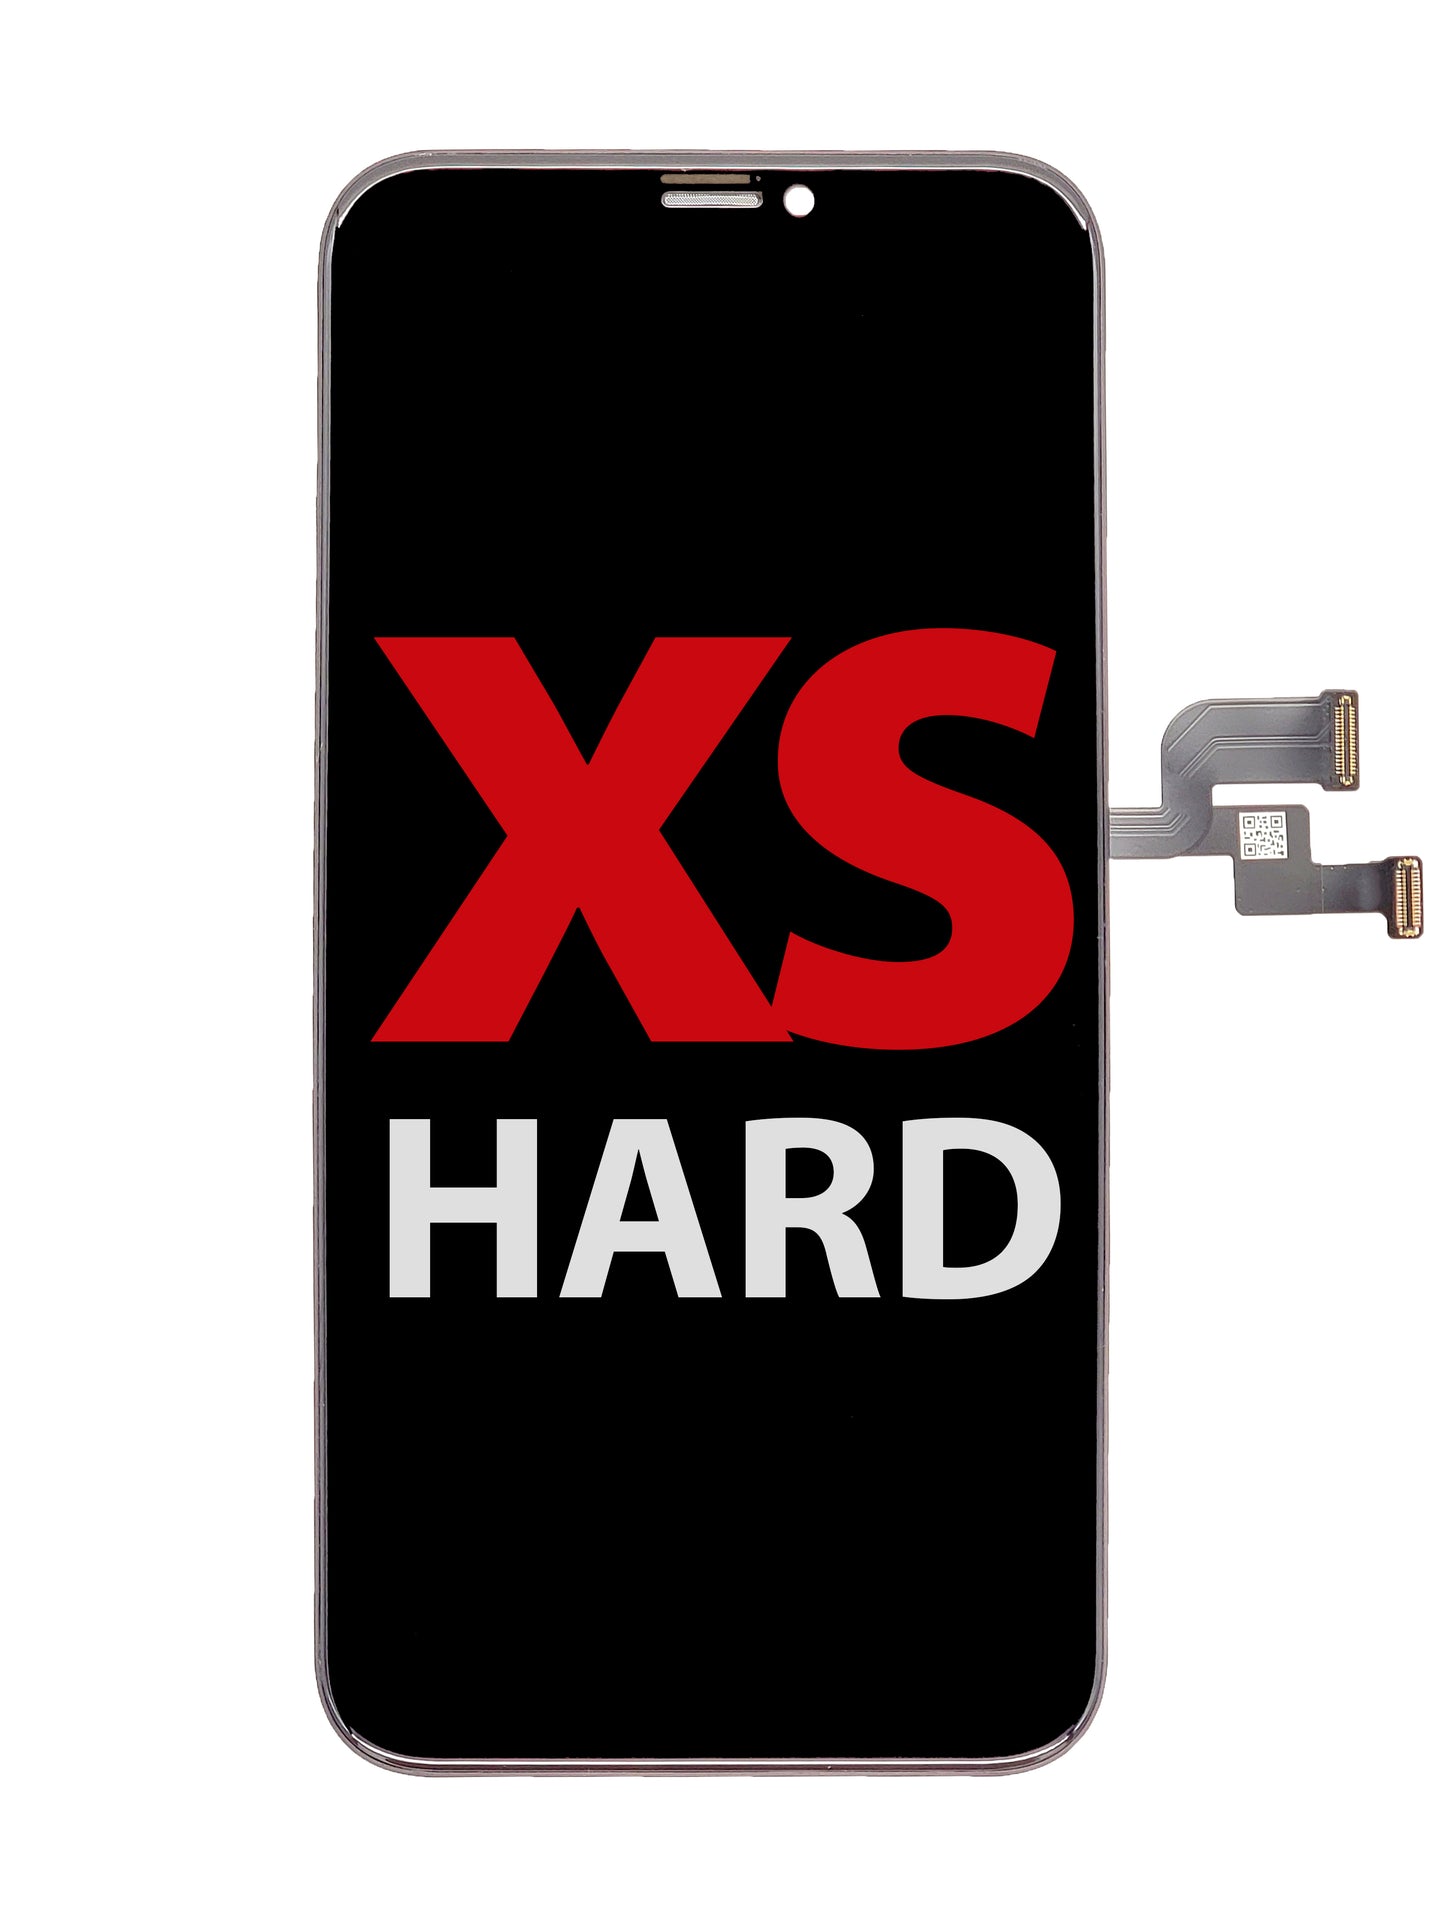 iPhone XS OLED Assembly (Hard OLED)